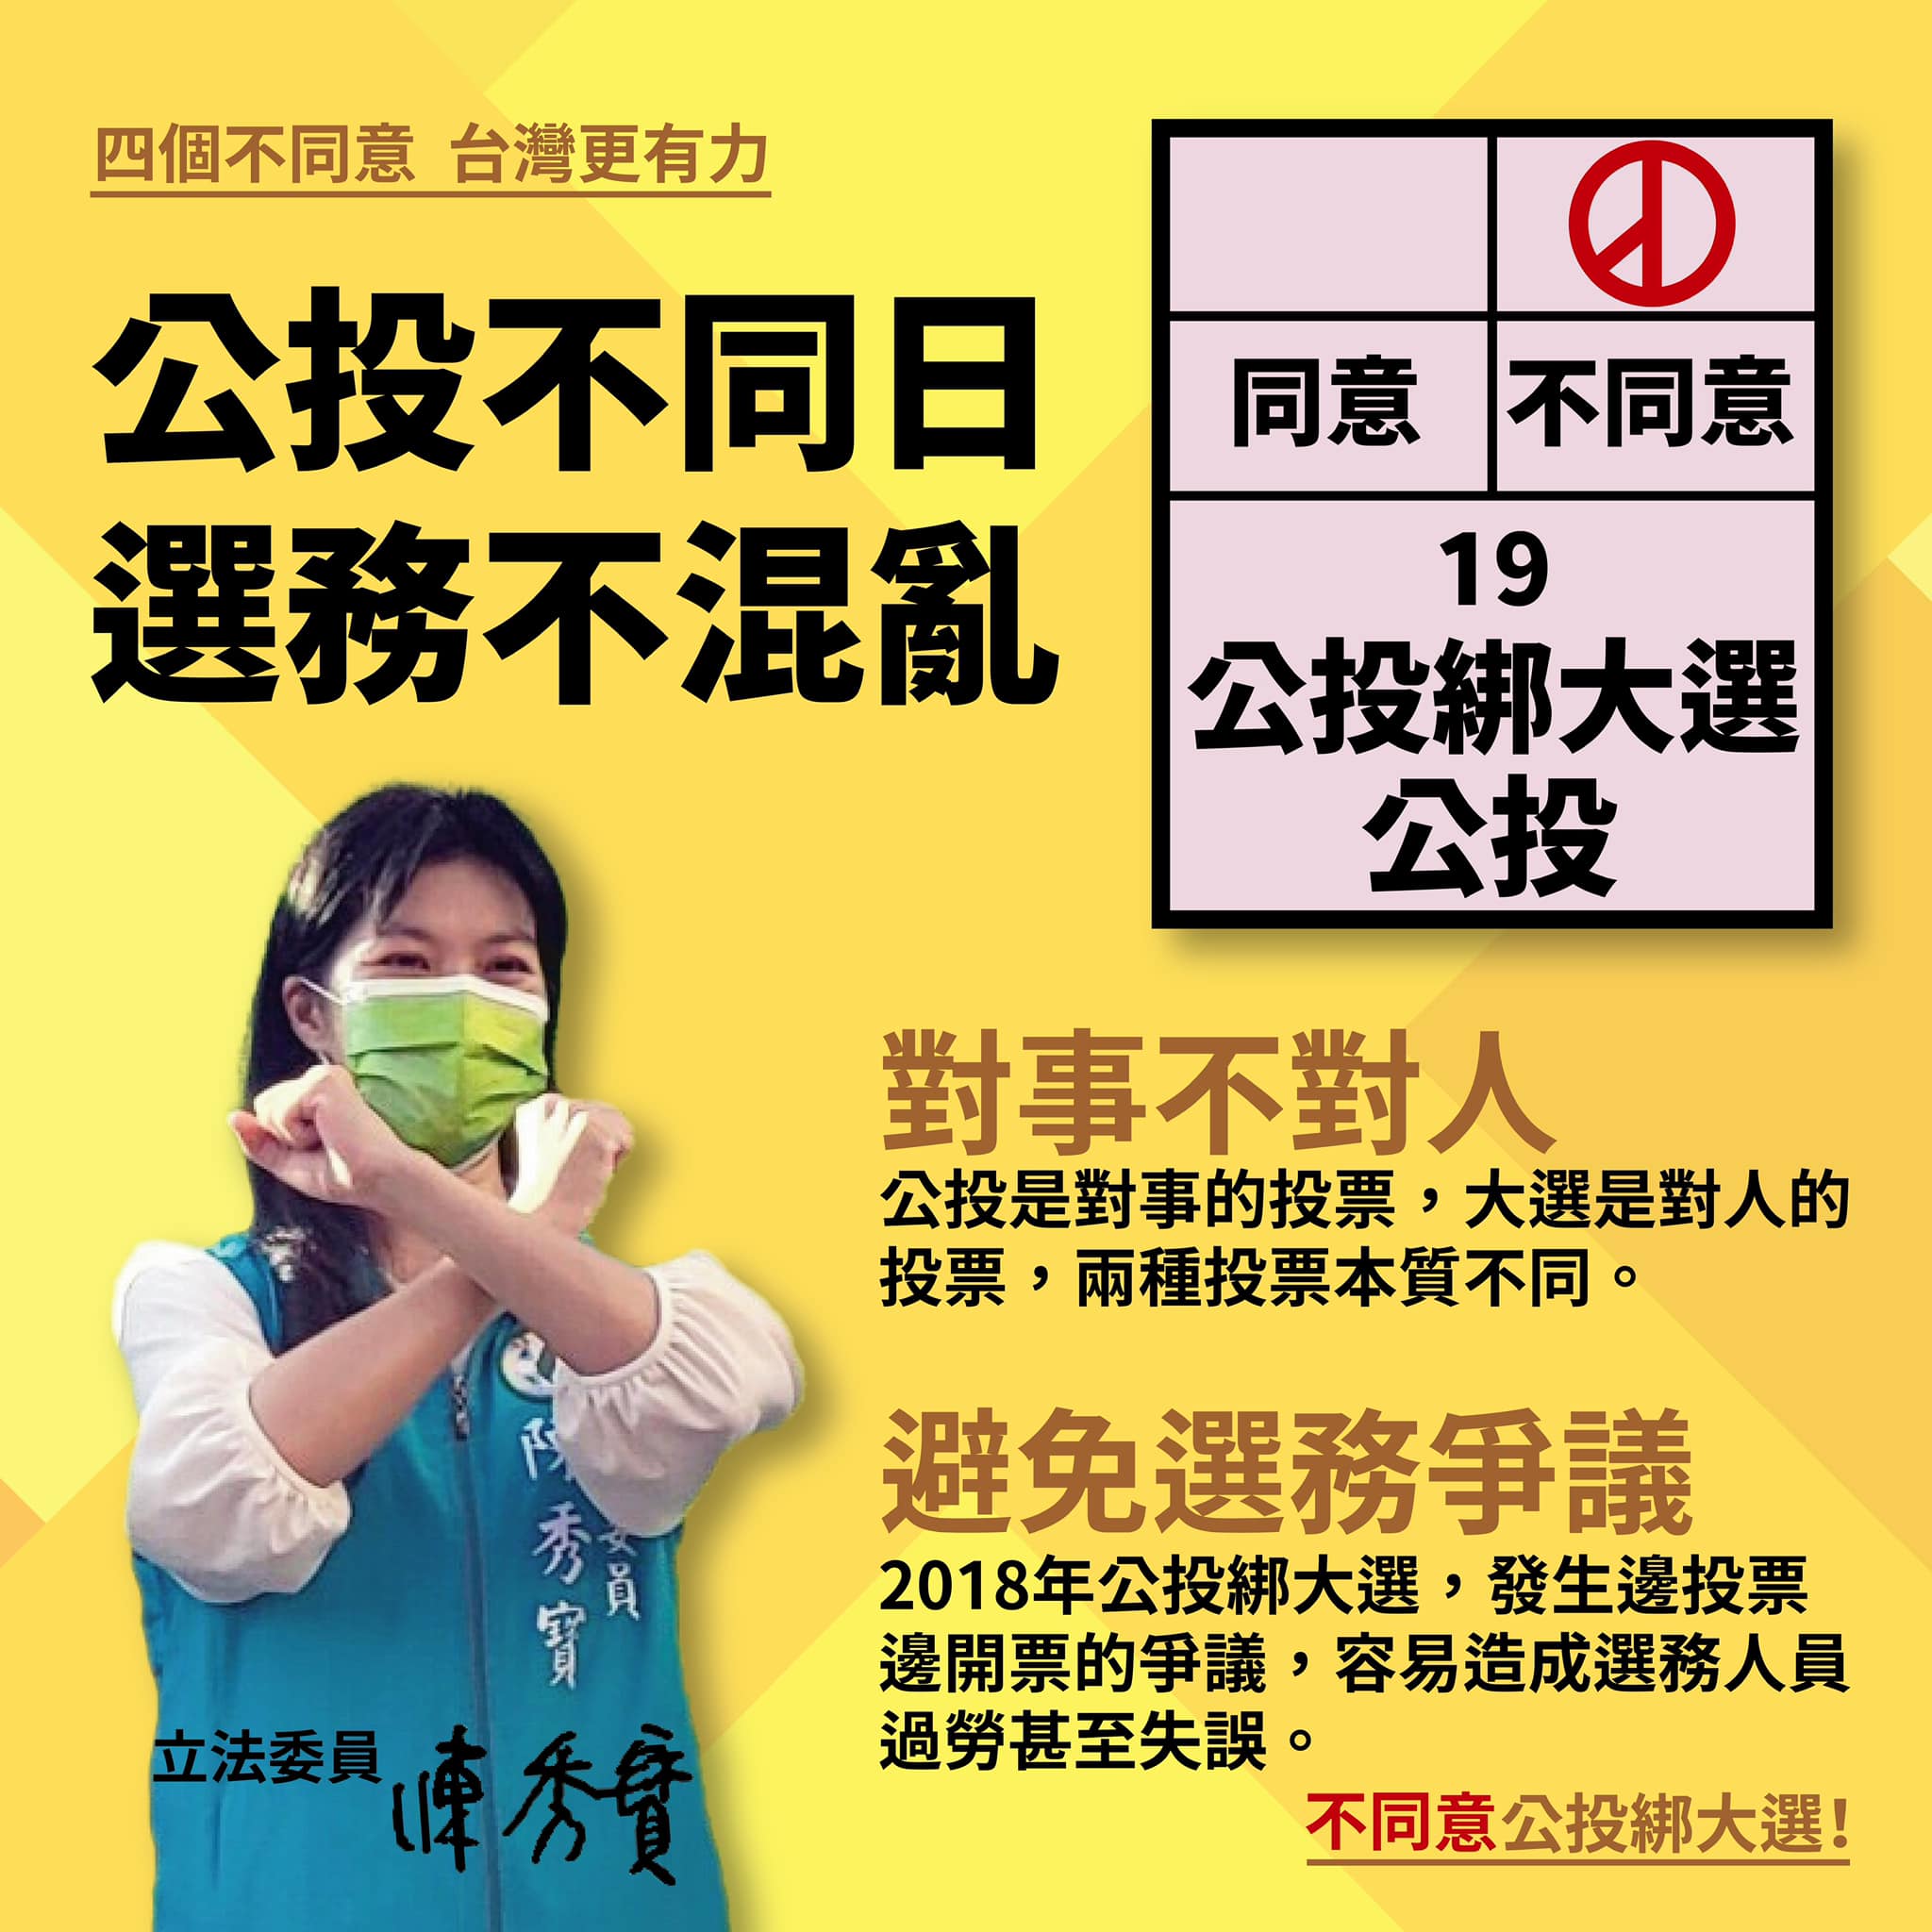 阻礙台灣進步的公投案不可同意